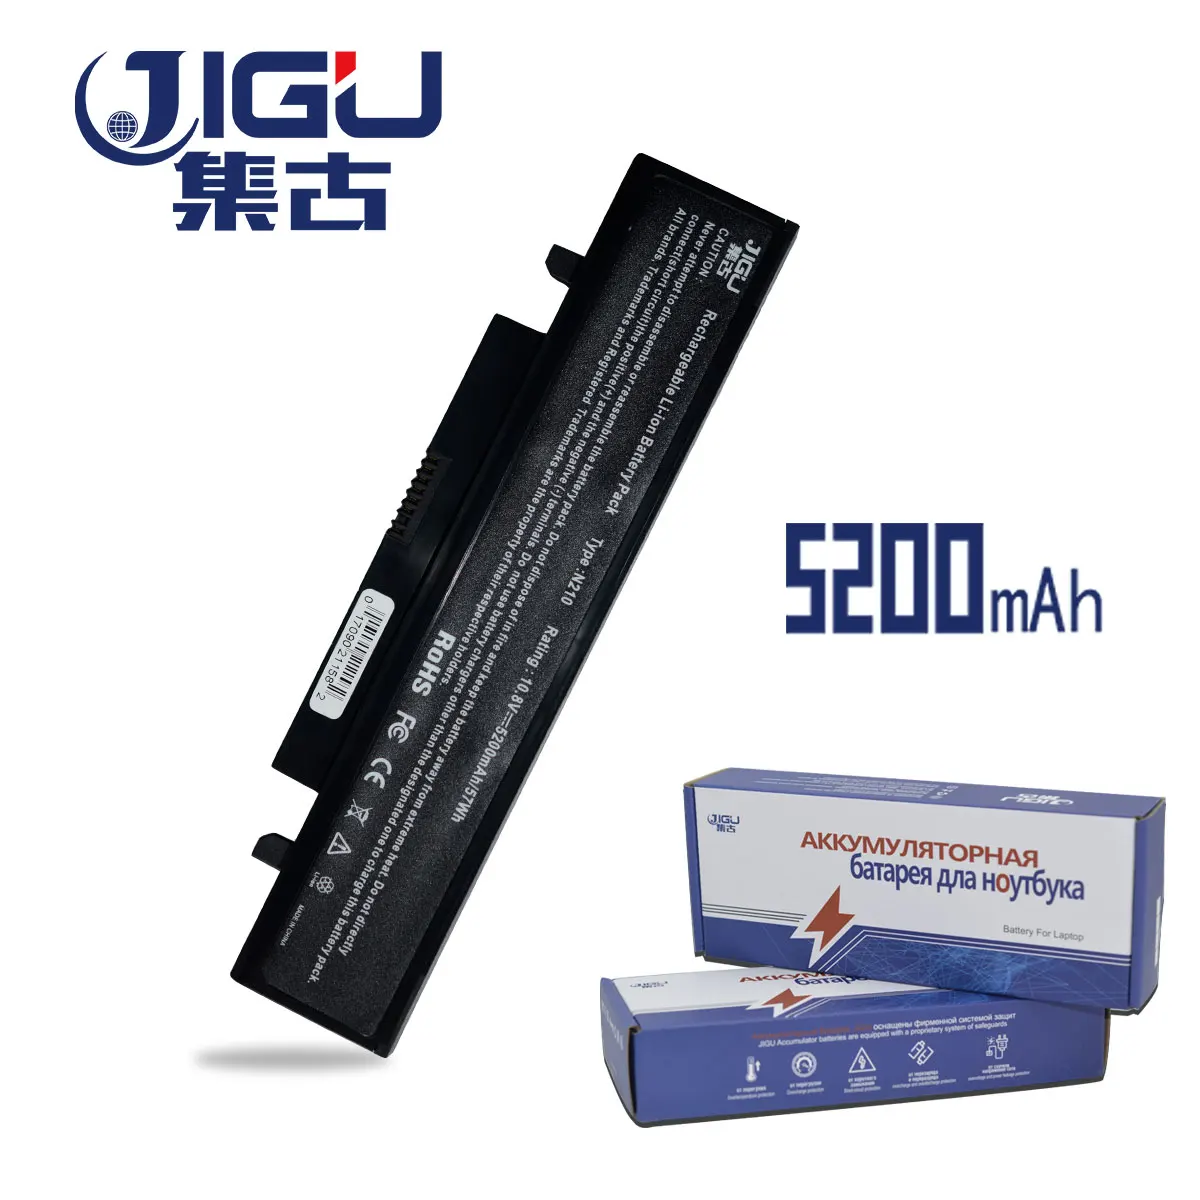 

JIGU Battery For SAMSUNG X318 X320 X418 X420 X520 Q328 Q330 N210 N218 N220 NB30 Plus AA-PB1VC6B AA-PL1VC6B